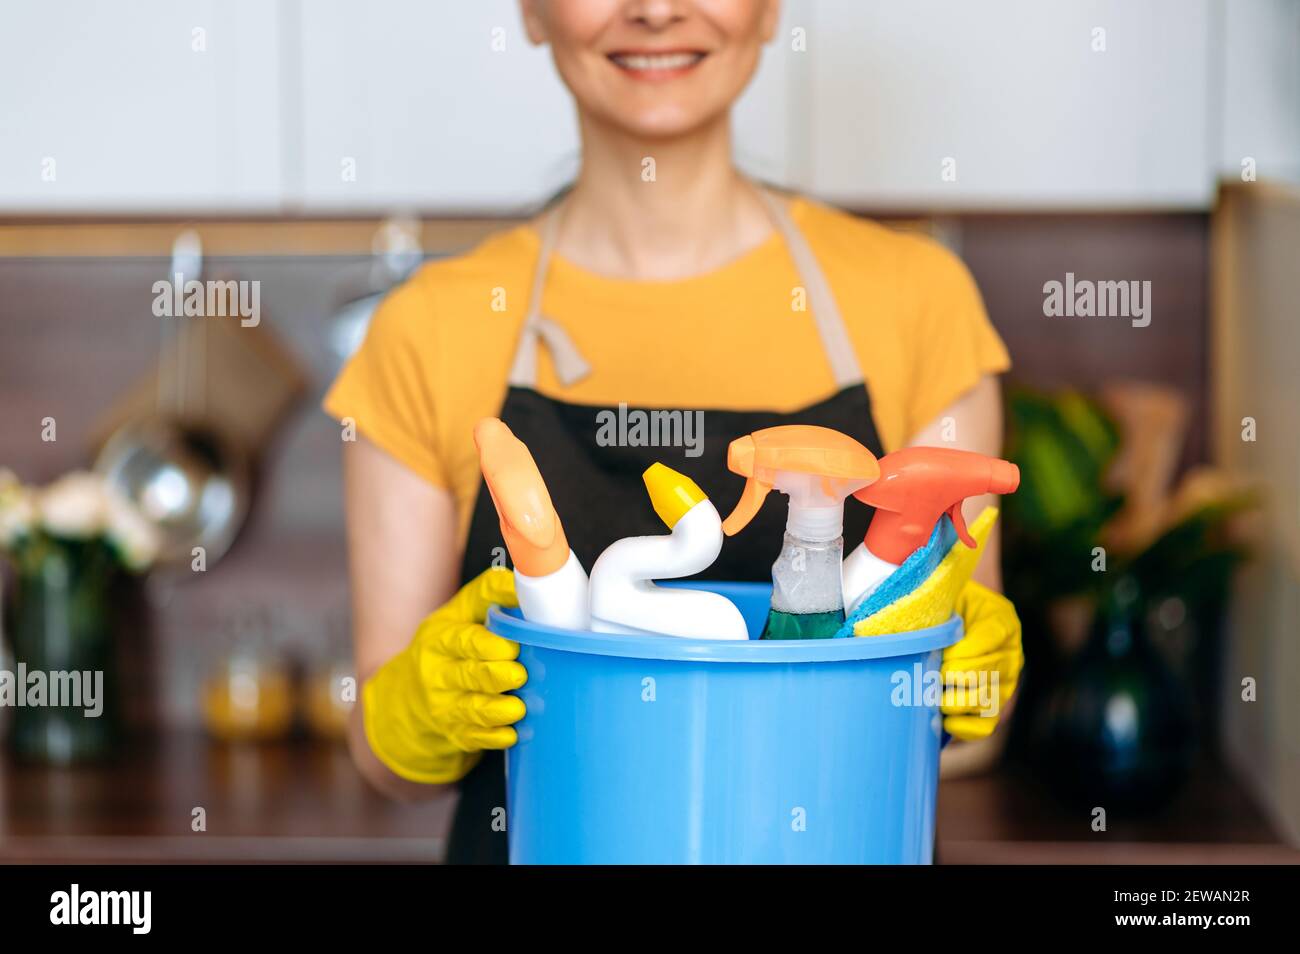 Reinigungsservice. Nahaufnahme der weiblichen Putzfrauen Hände, stehen in der Küche, hält Eimer mit Waschmitteln und Lumpen, Reinigung und Sauberkeit Konzept Stockfoto